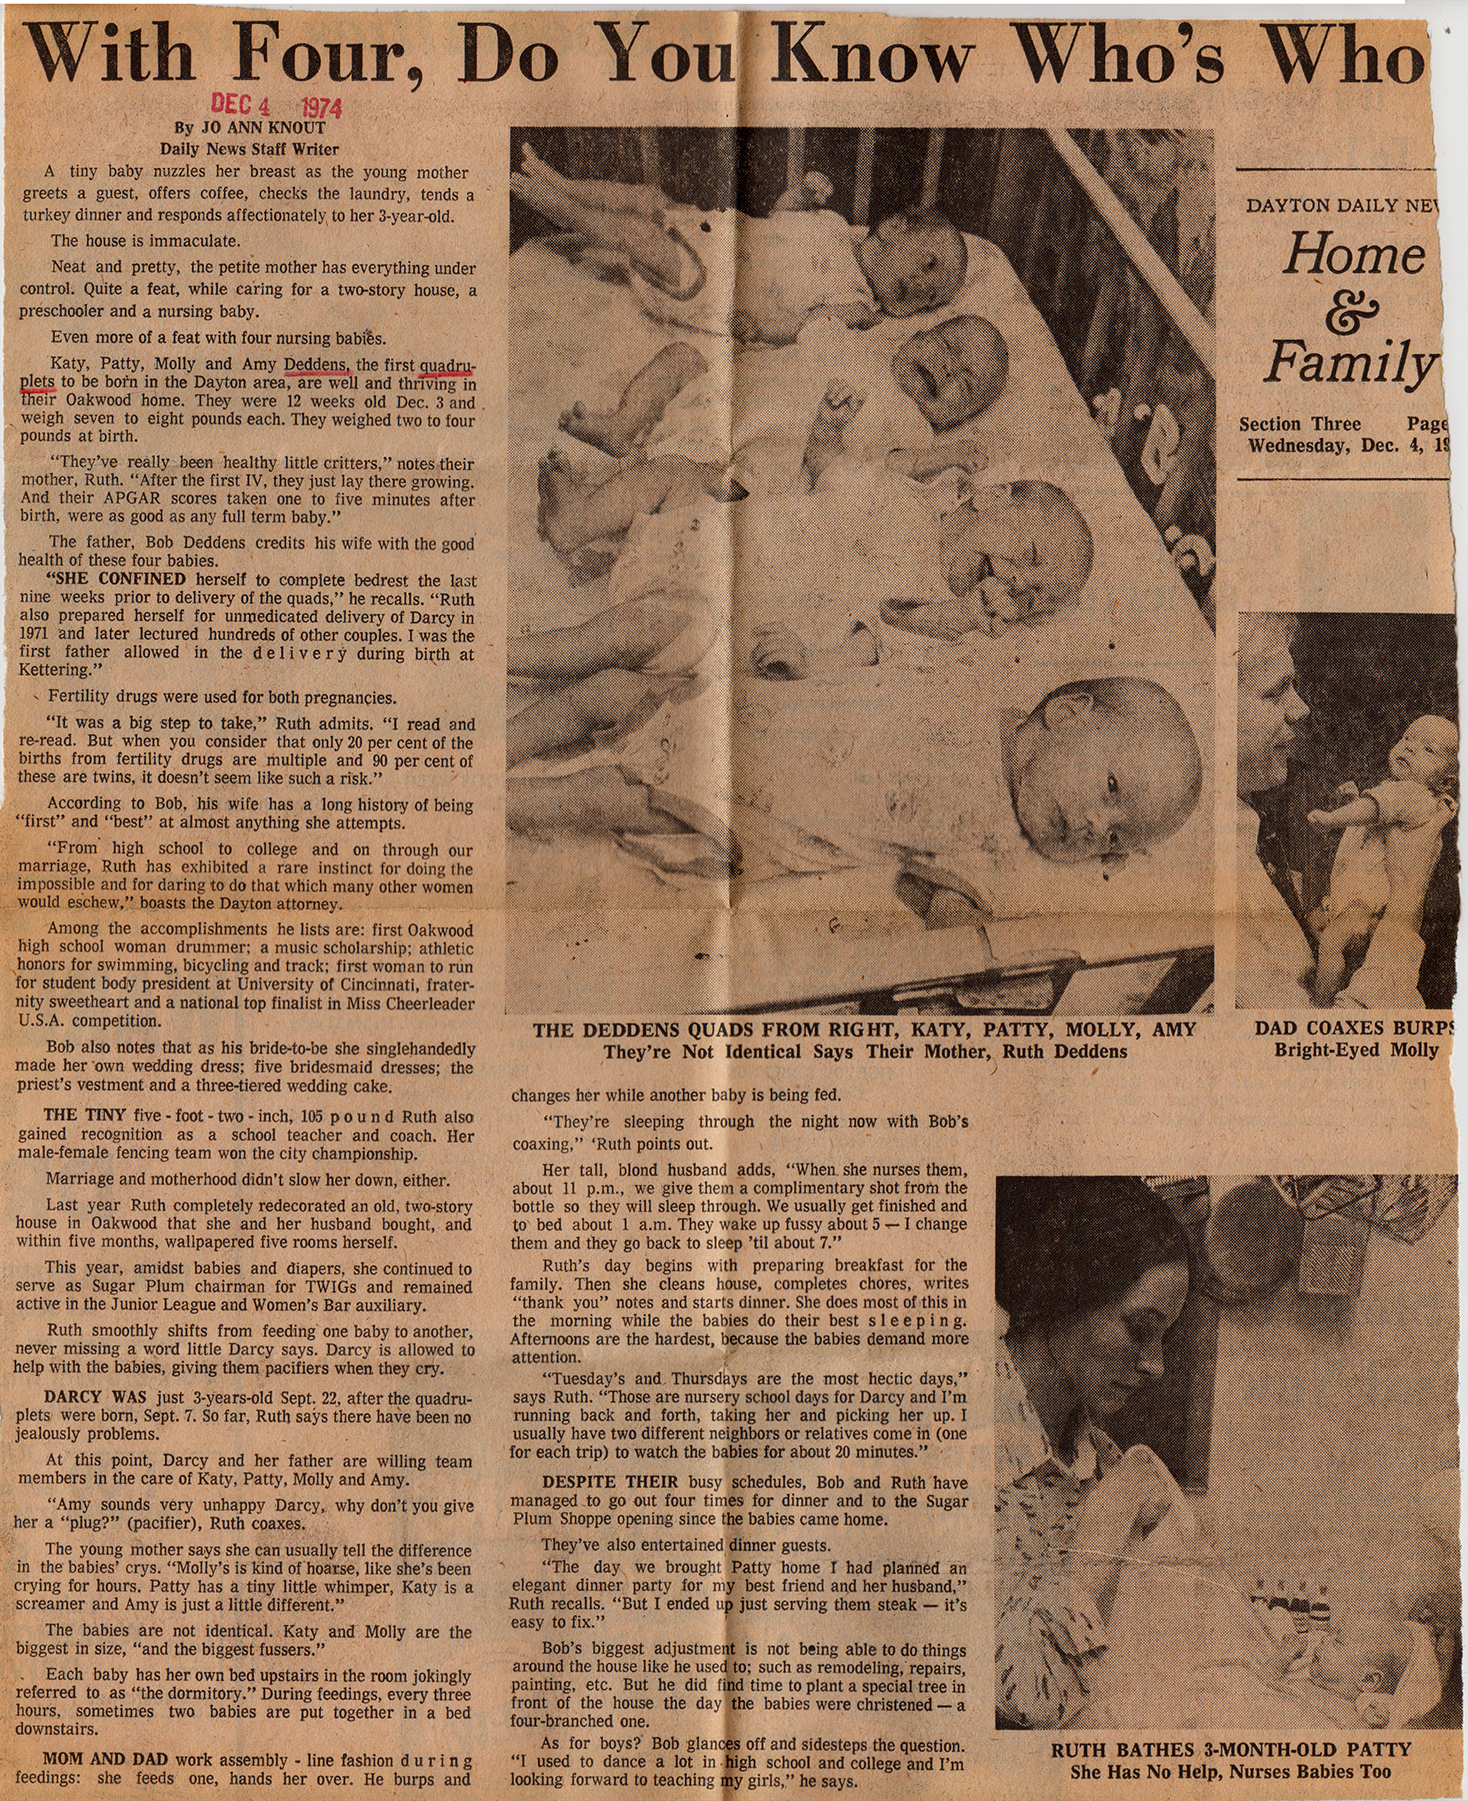 Dec. 4, 1974, article